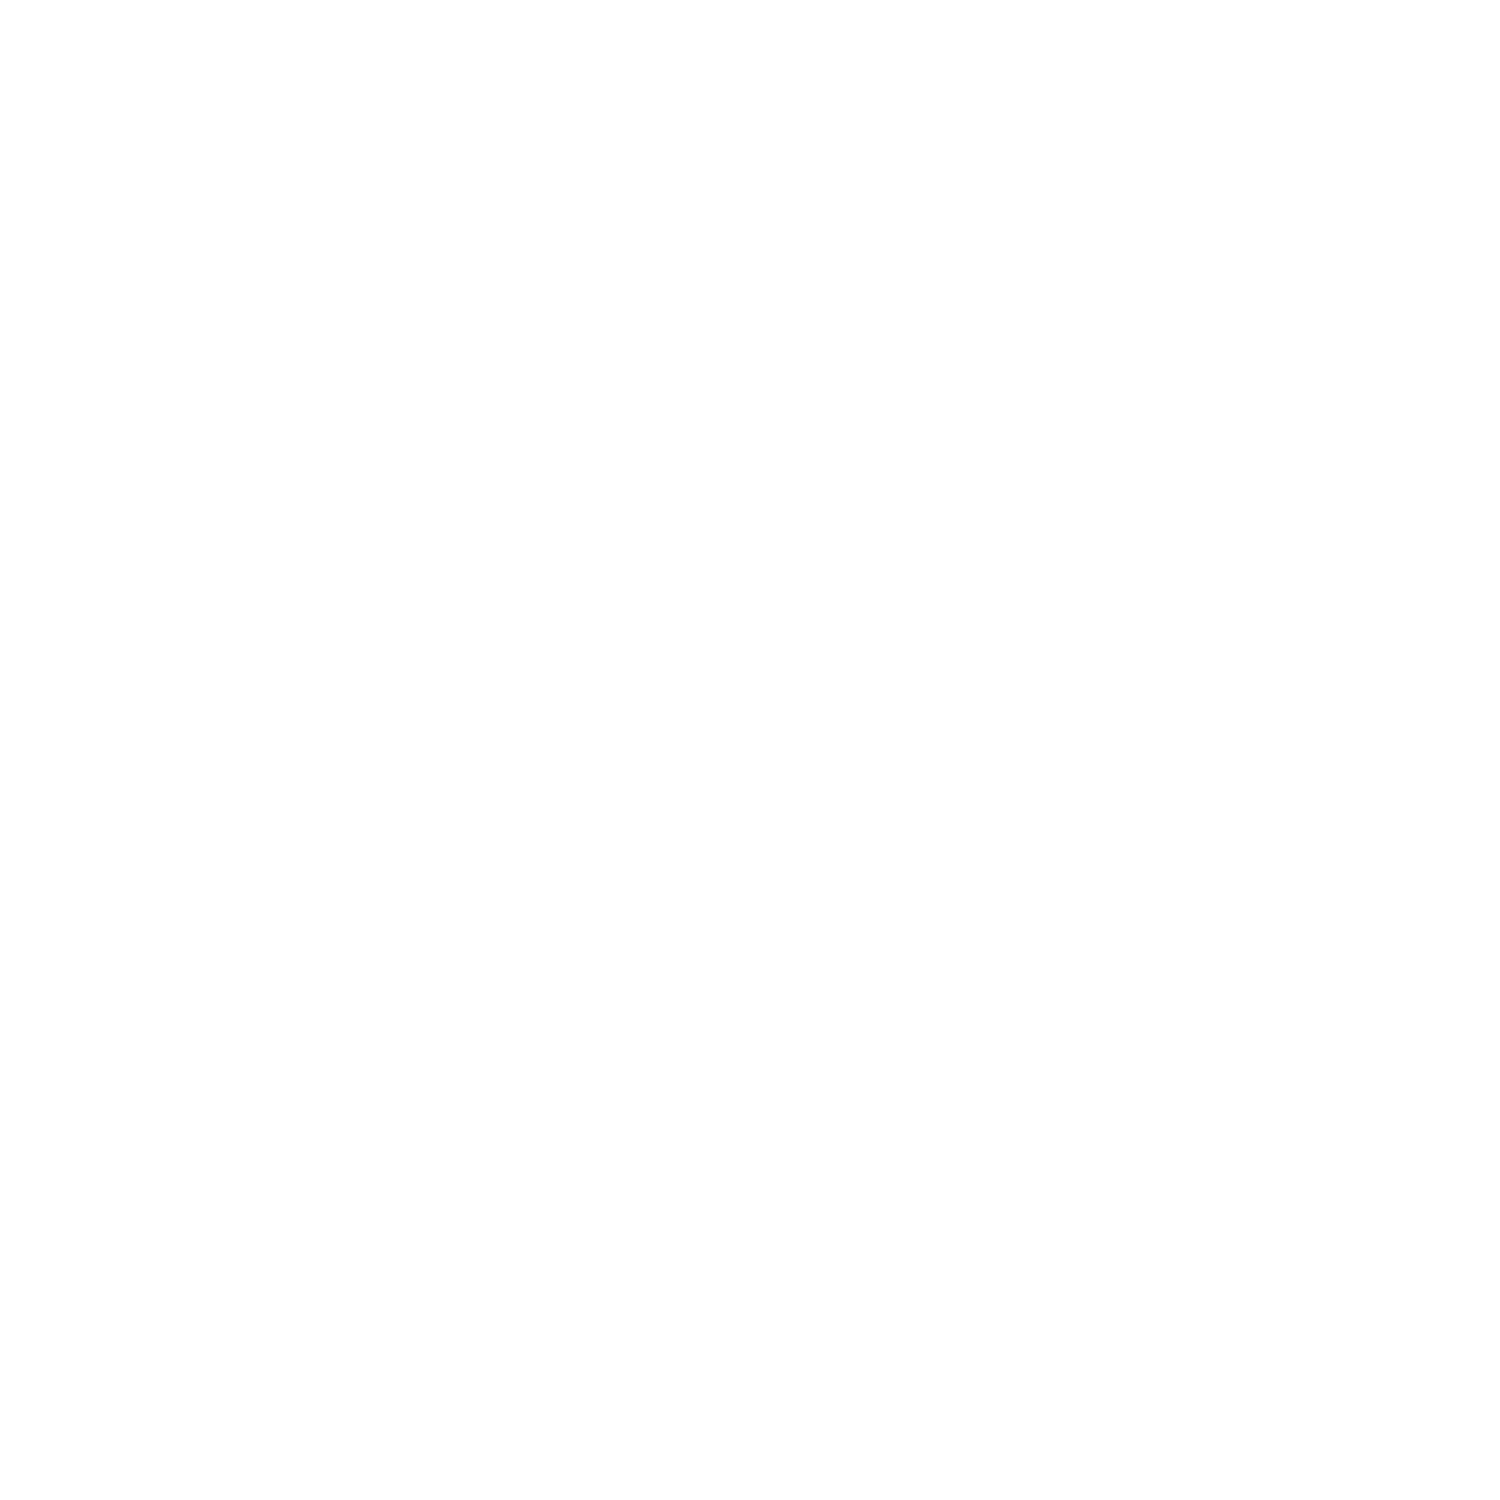 (c) Angelica-homesitting.ch